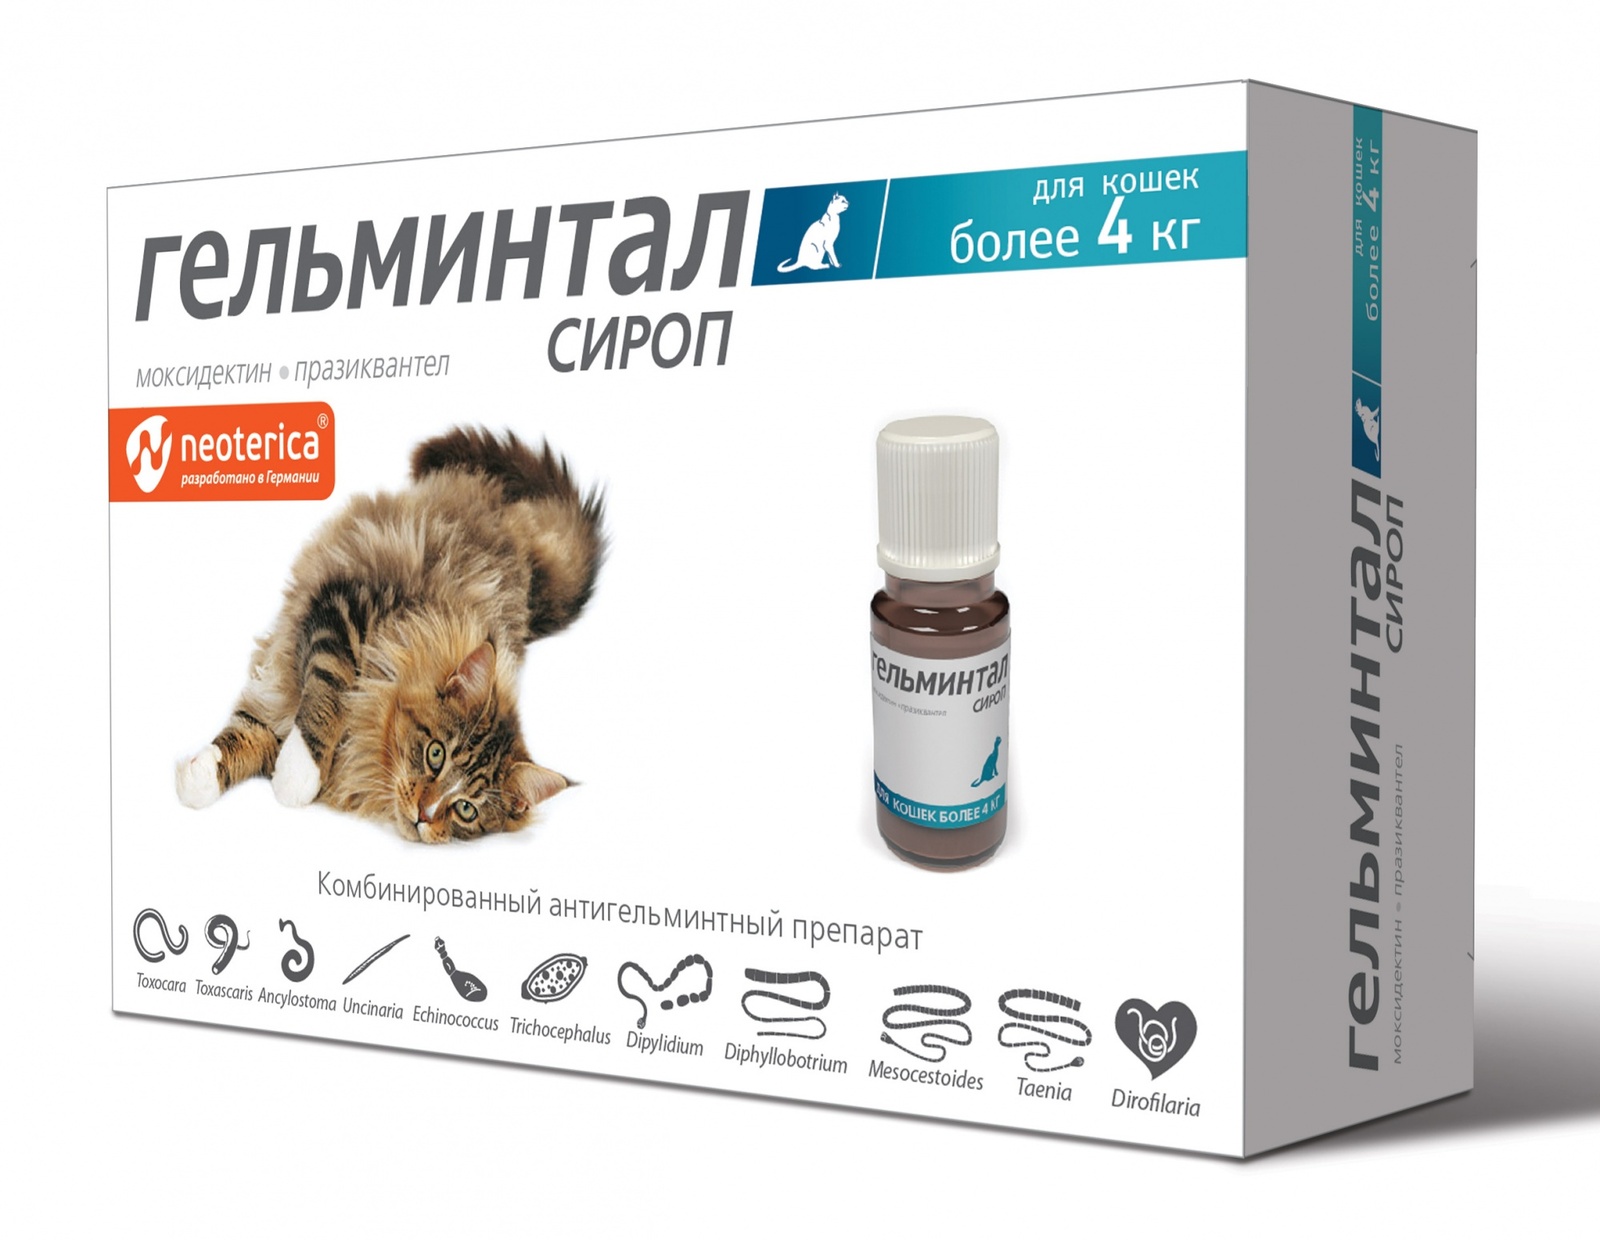 Гельминтал Гельминтал сироп от глистов, для кошек более 4 кг, 5 мл (60 г) гельминтал для кошек более 4кг сироп 5мл